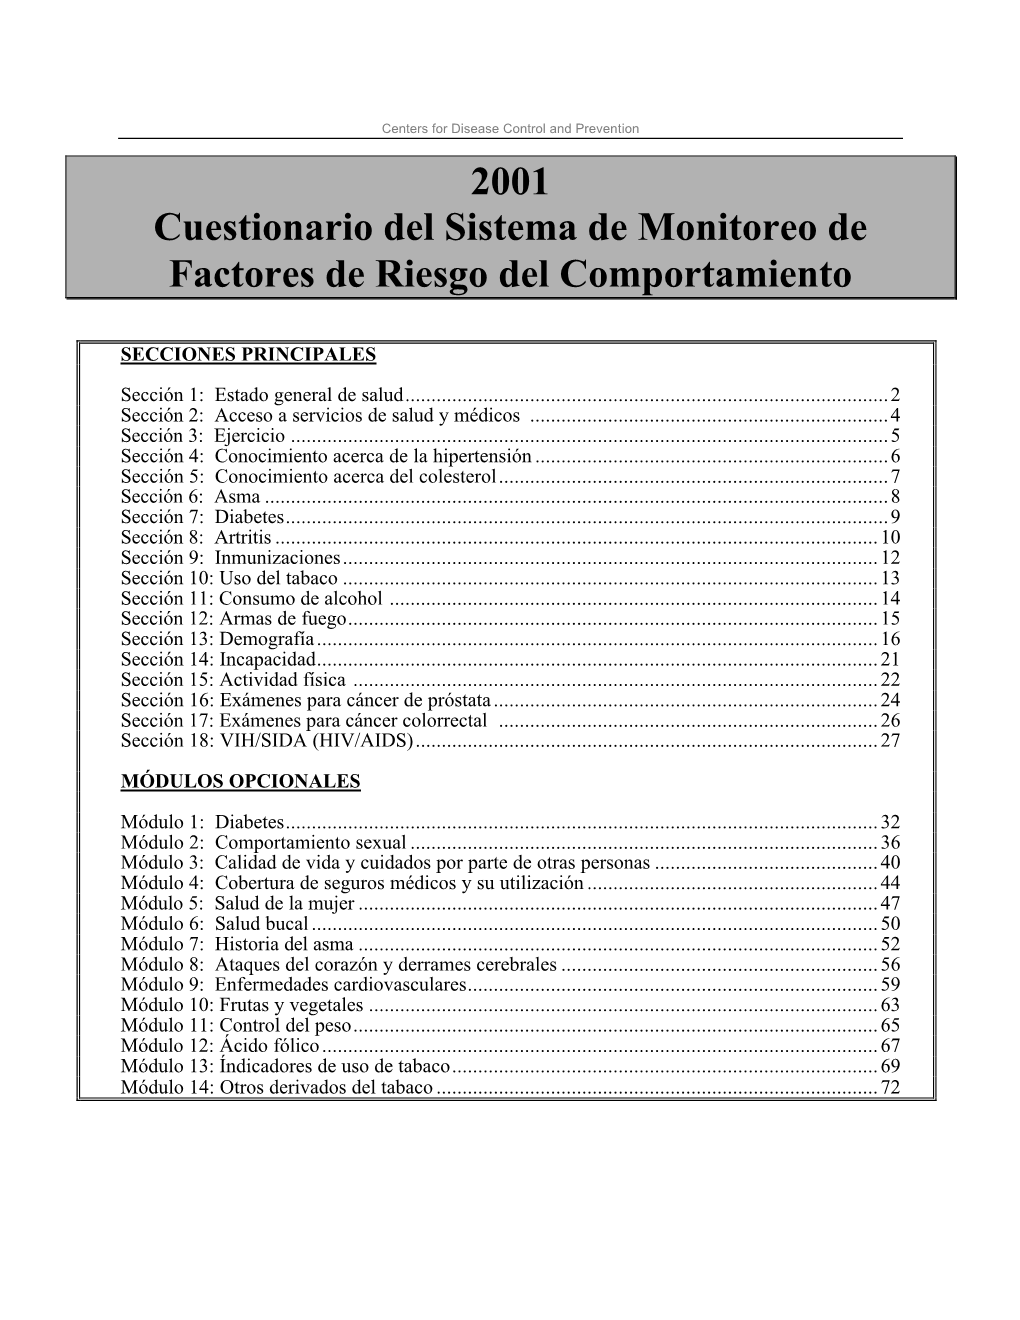 2001 BRFSS Questionnaire